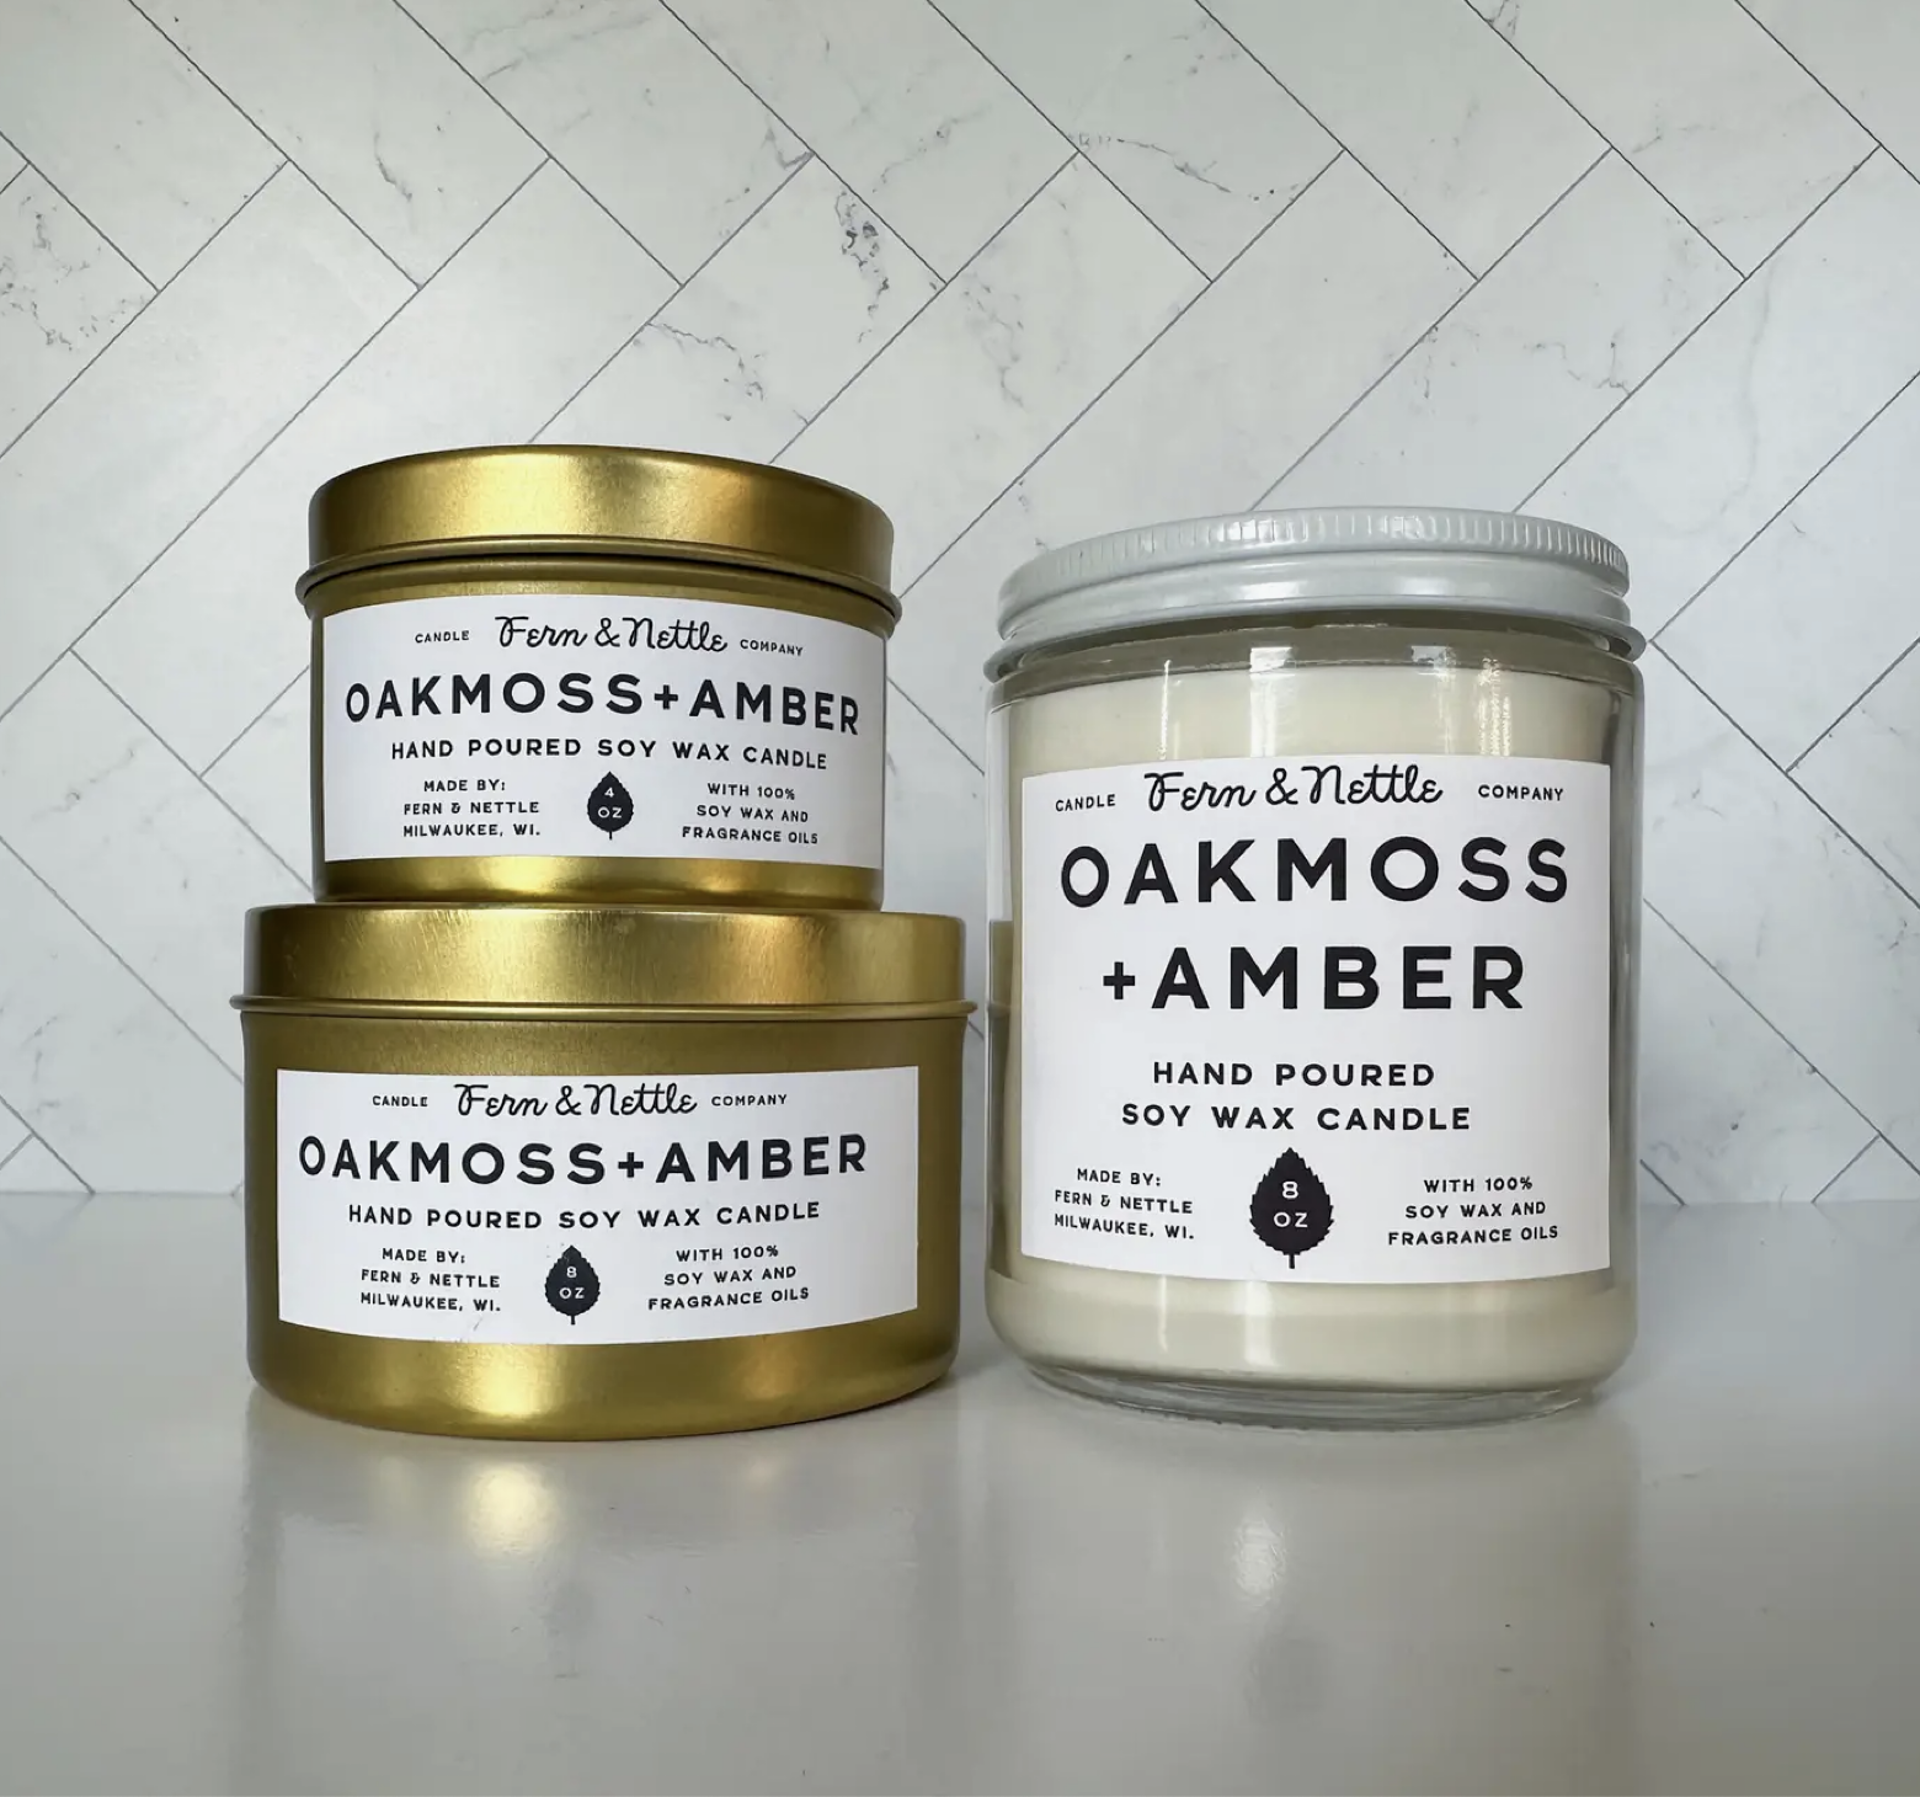 4 oz. Oakmoss + Amber Soy Wax Candle by Fern & Nettle